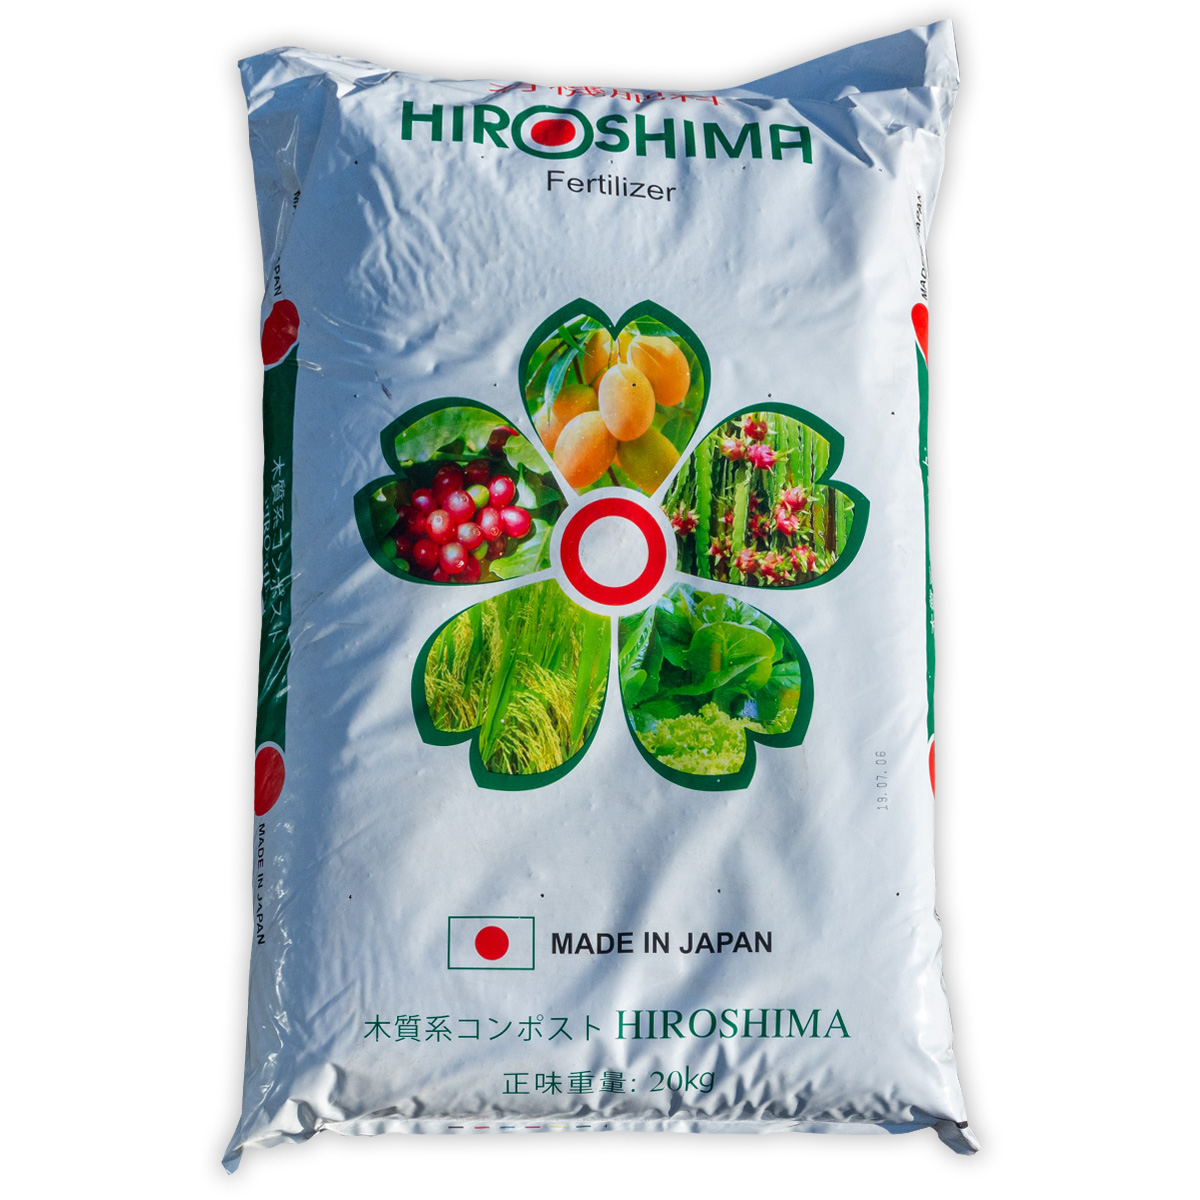 HIROSHIMA Fertilizer